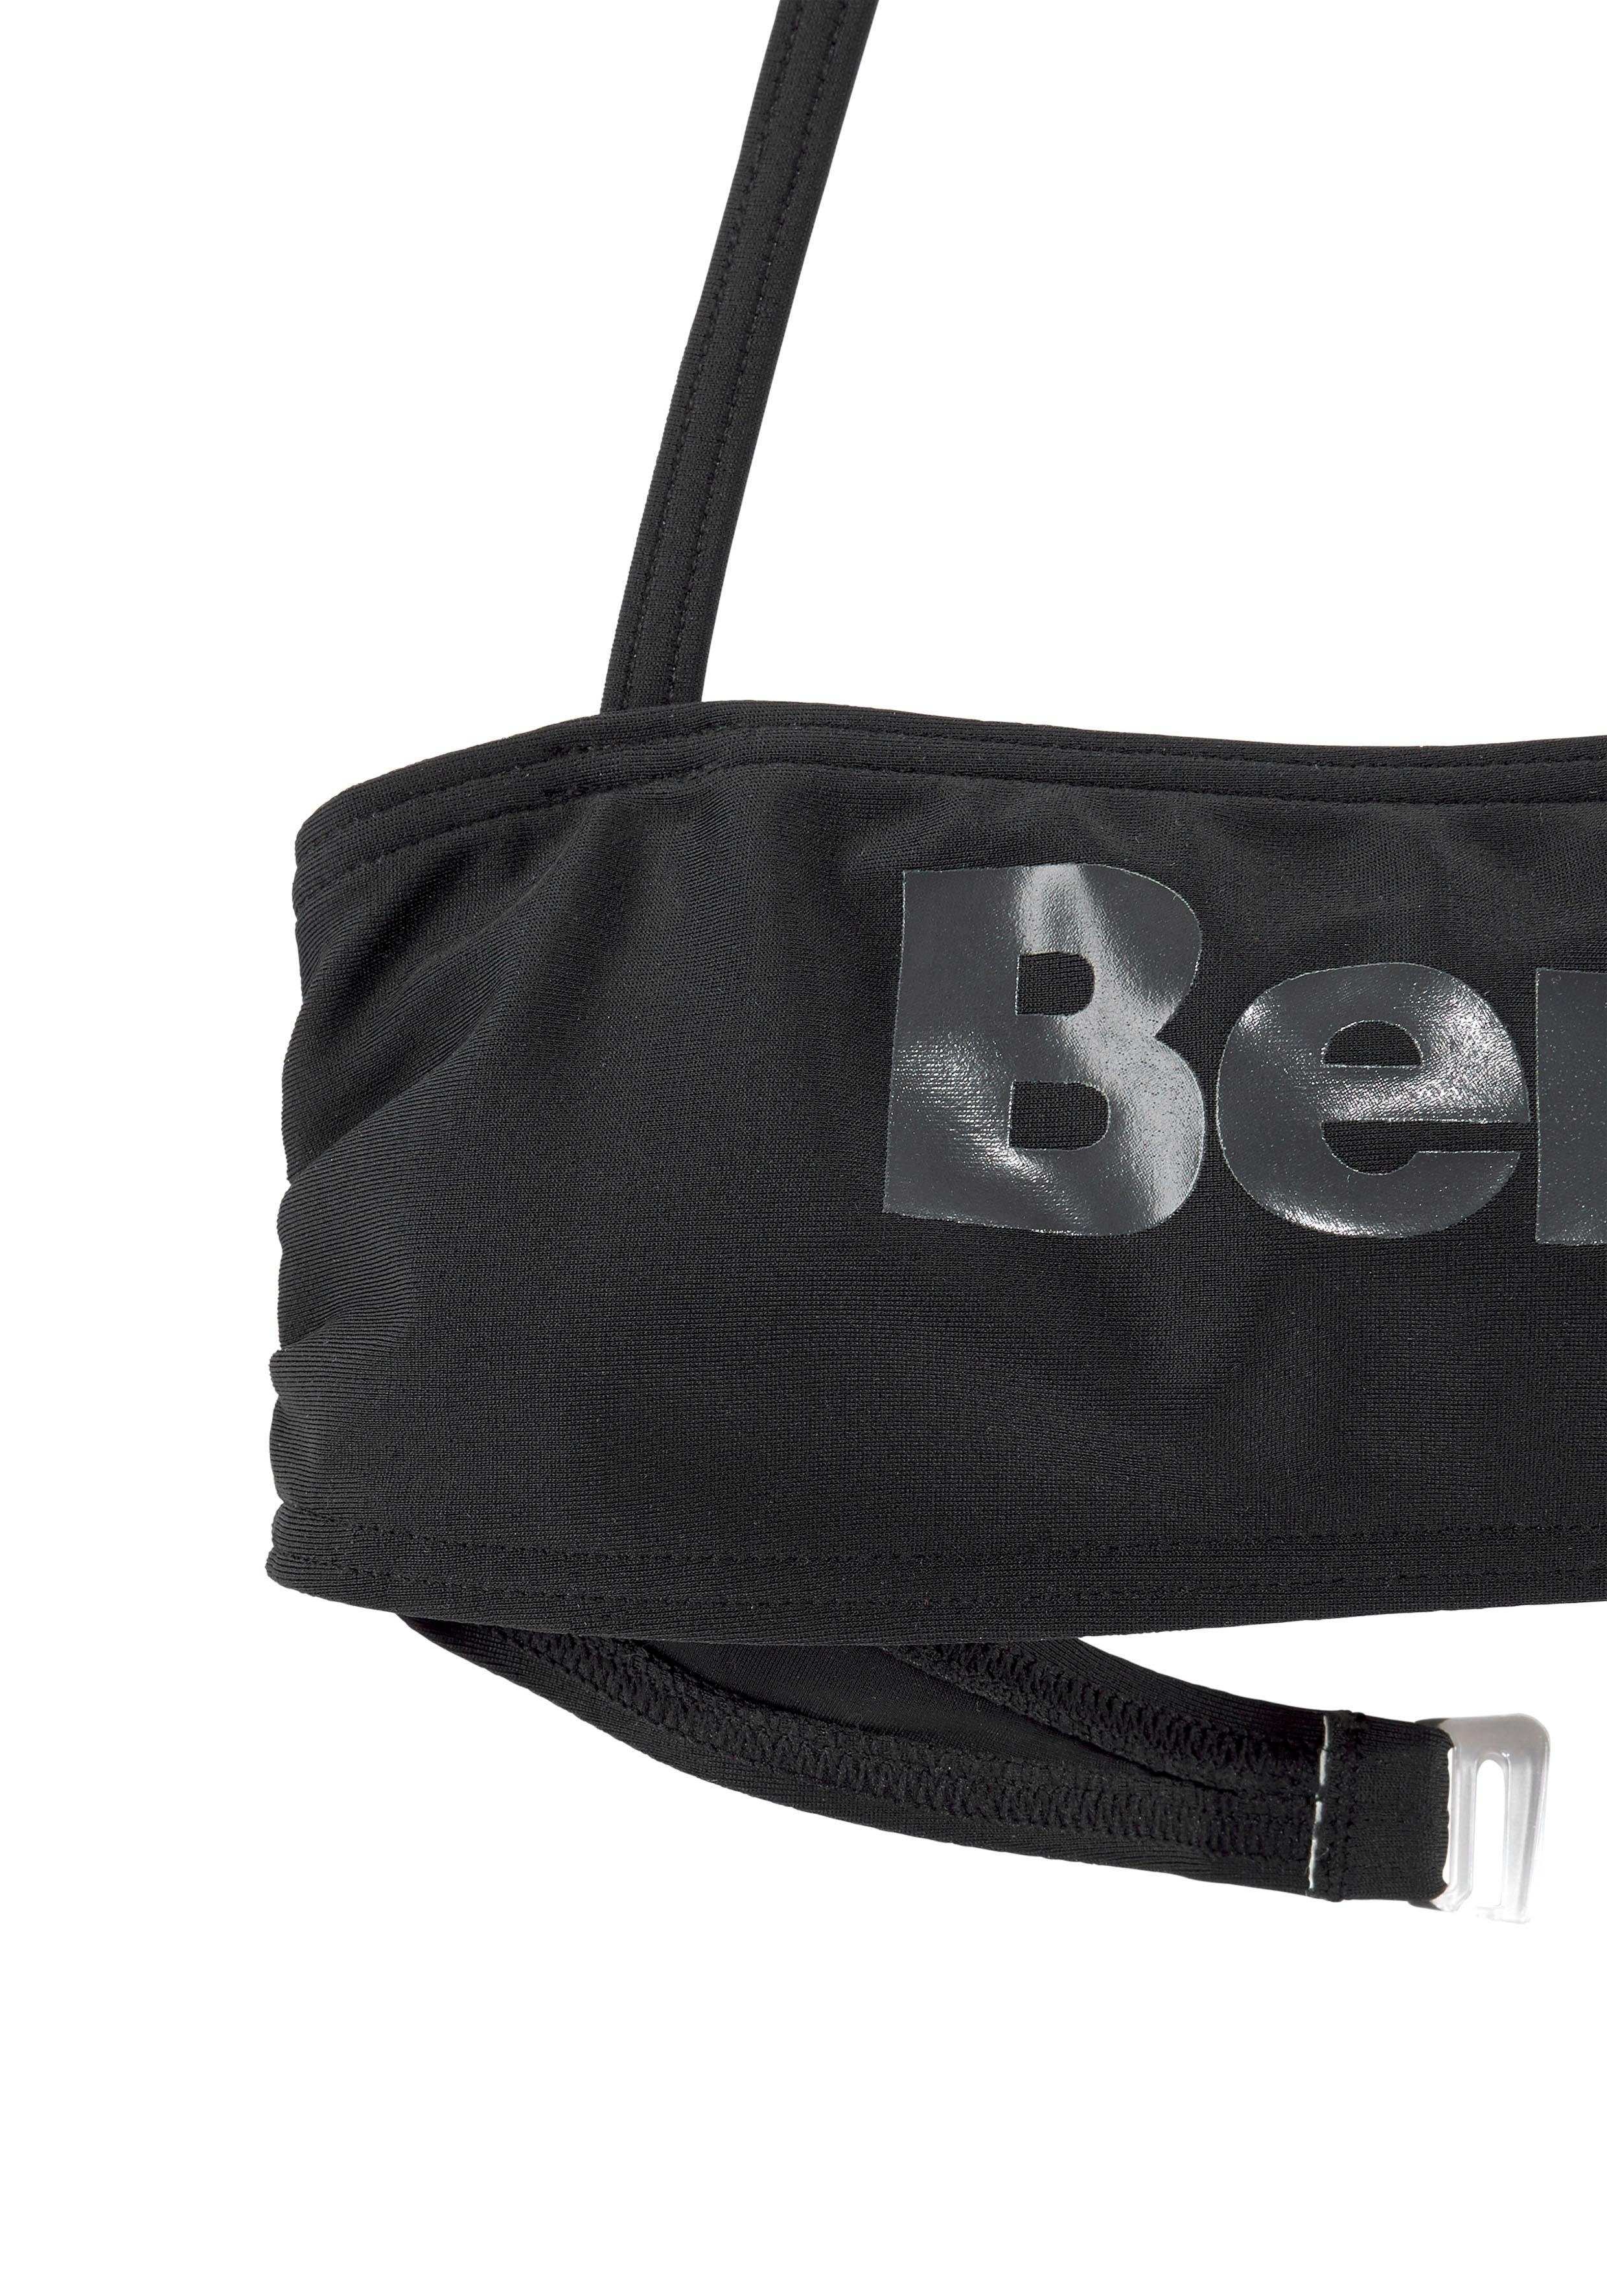 Bench. Bandeau-Bikini Logoprint mit schwarz-grau großem